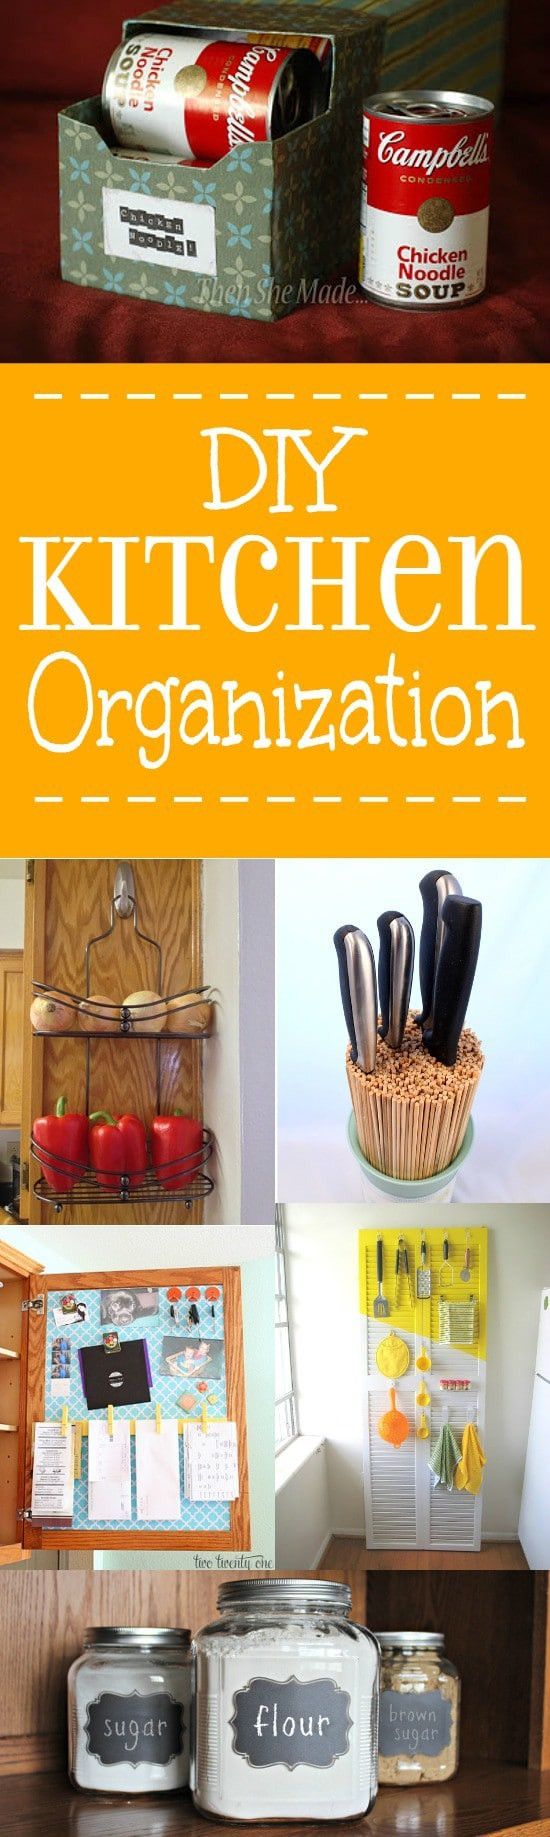 DIY Kitchen Organizing
 24 DIY Kitchen Organization Ideas